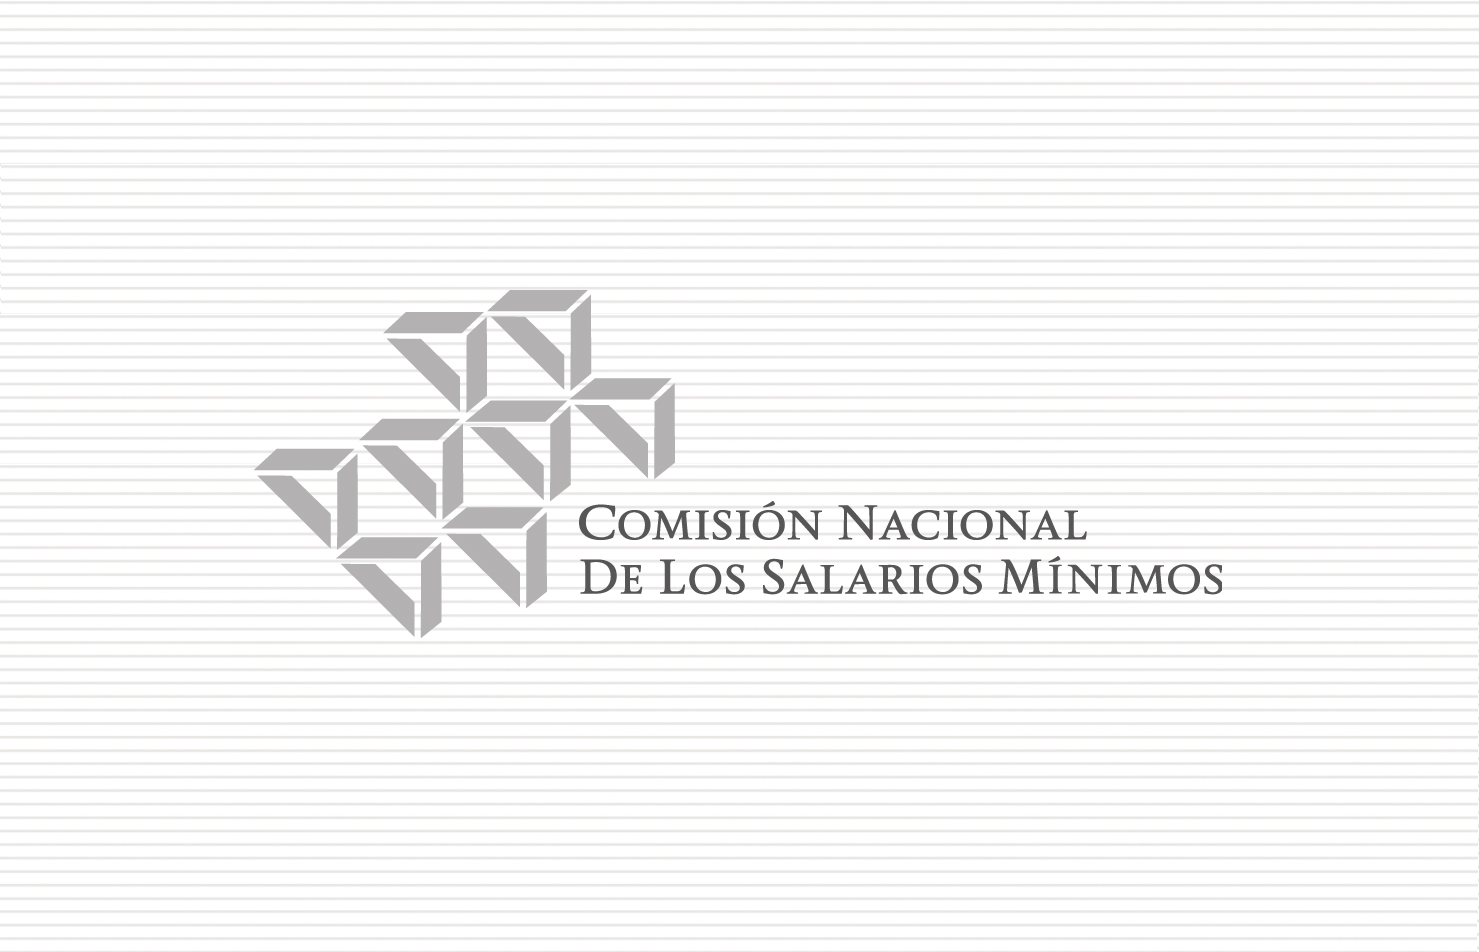 Comisión Nacional de los Salarios Mínimos